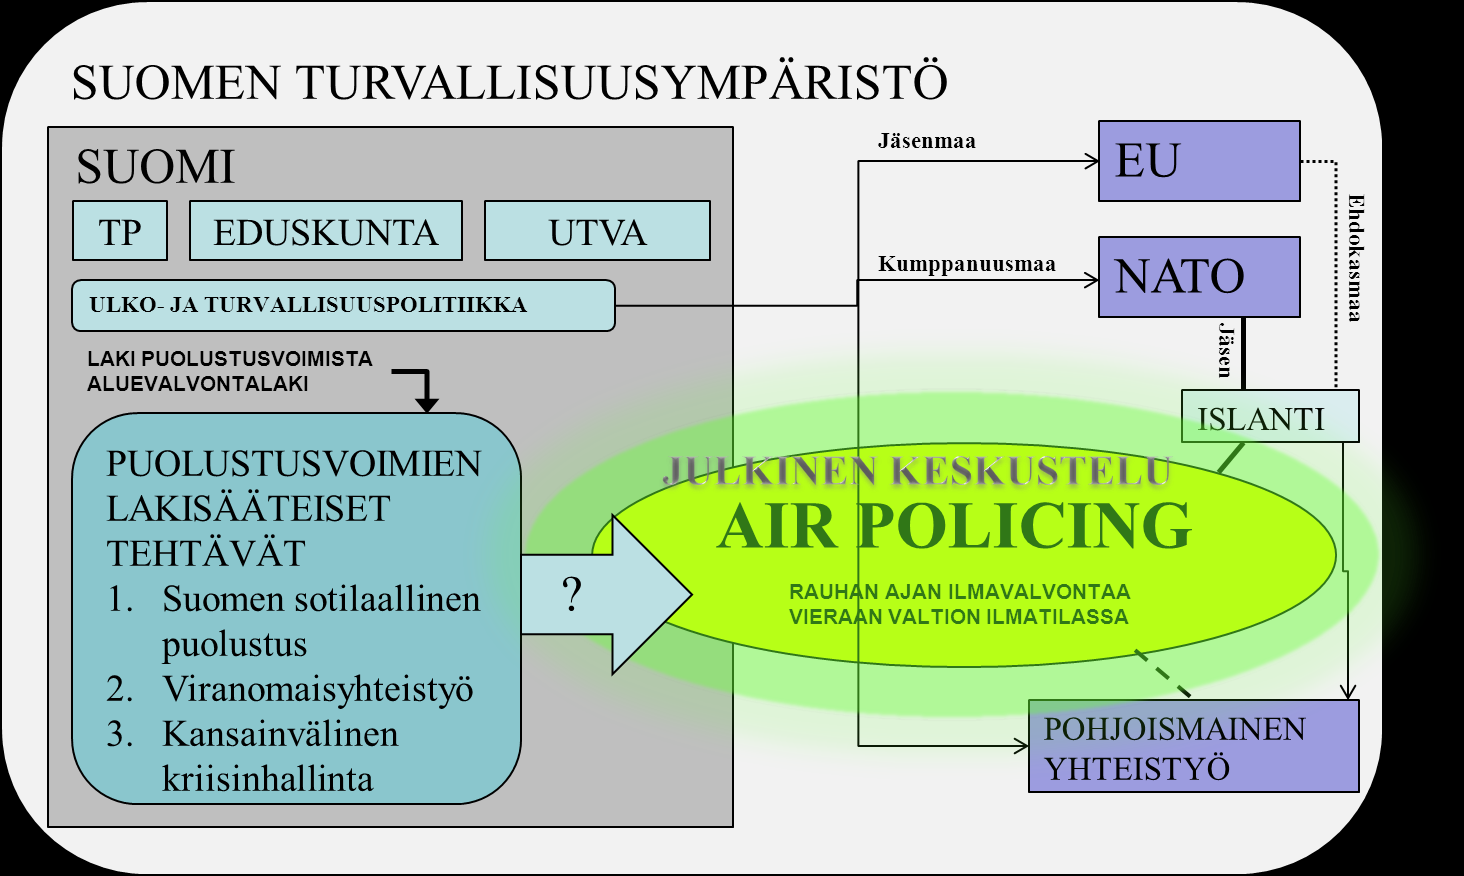 4 Huhtikuun 2013 tietojen perusteella Islannin ilmavalvontaoperaatio toteutetaan alkuvuodesta 2014 Nato-rotaation mukaisella Norjan valvontavuorolla.